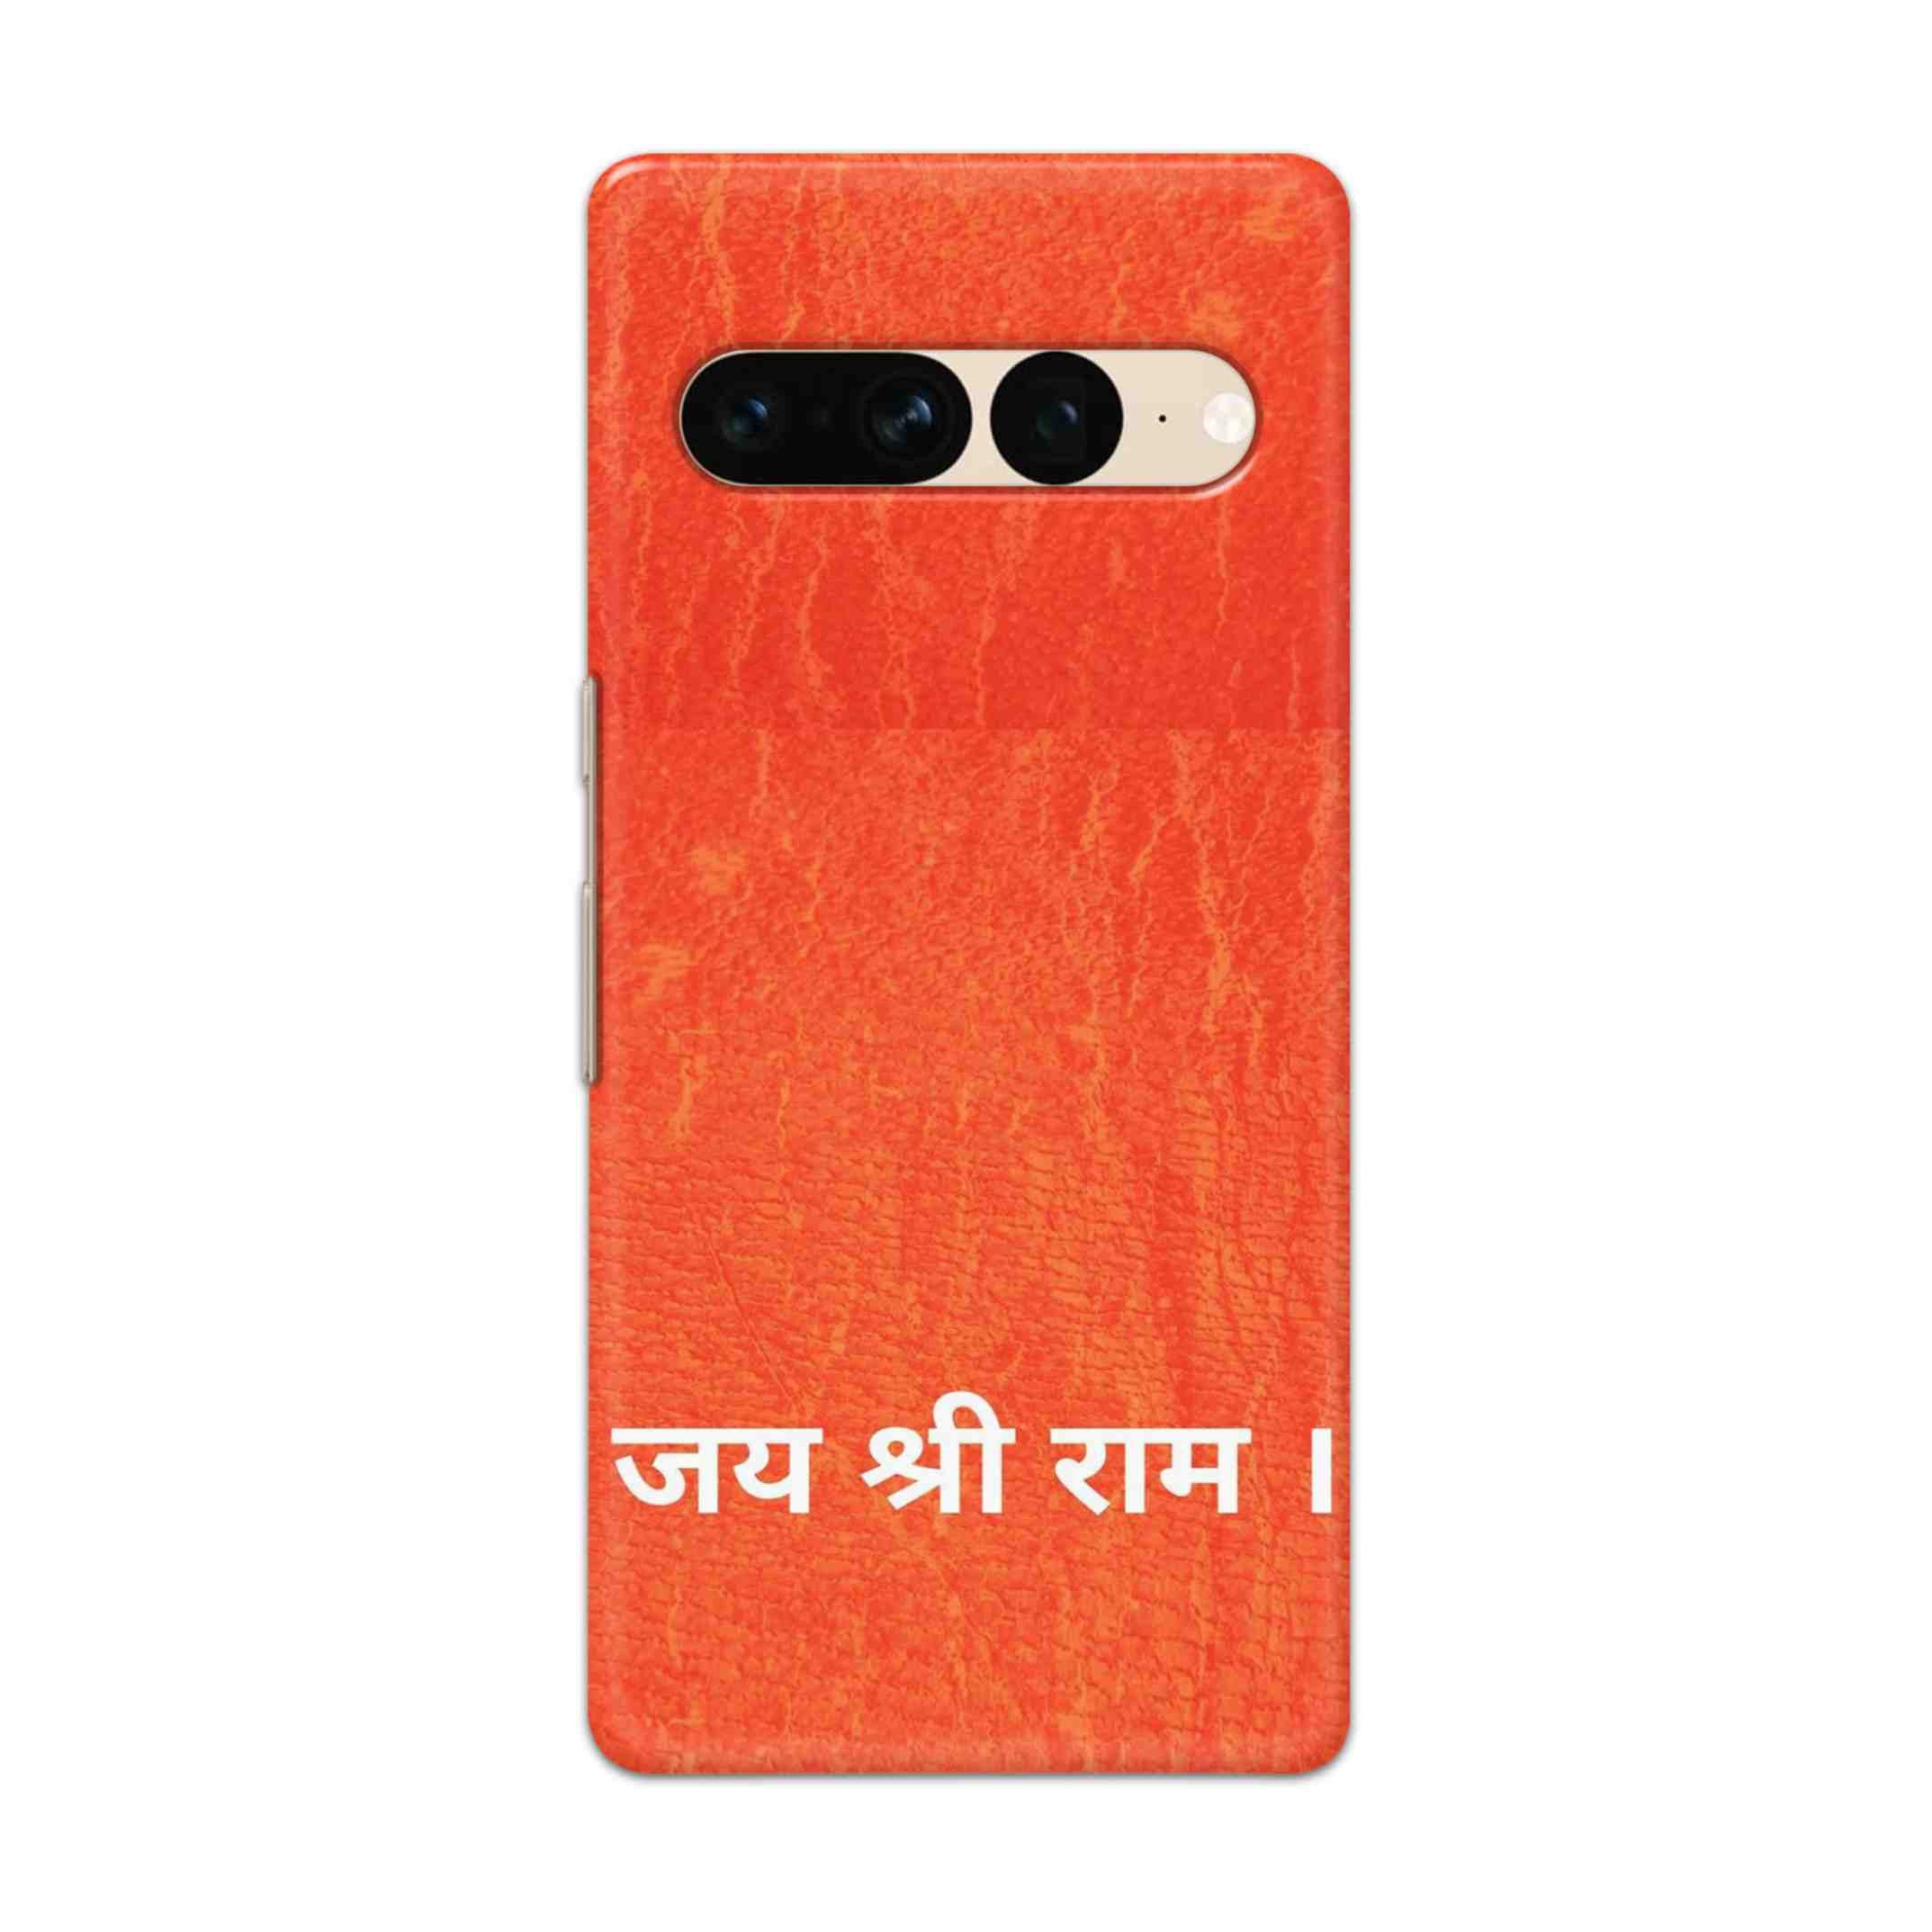 Buy Jai Shree Ram Hard Back Mobile Phone Case Cover For Google Pixel 7 Pro Online